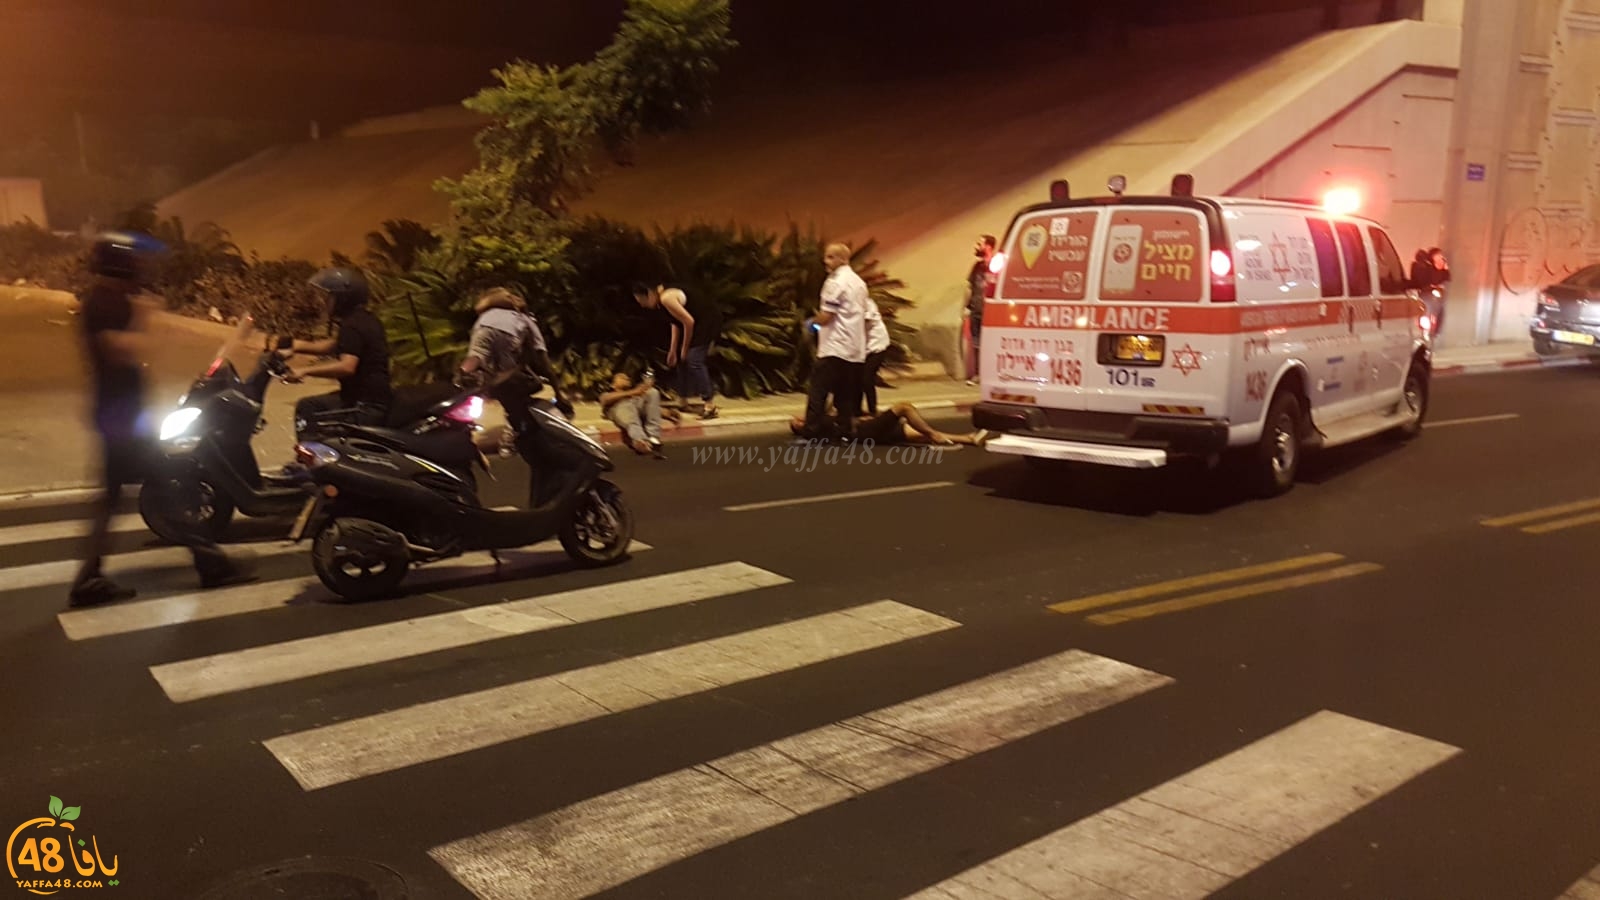  فيديو: اشتعال النيران بدراجة نارية اثر حادث طرق شرق يافا واصابة سائقها بجروح